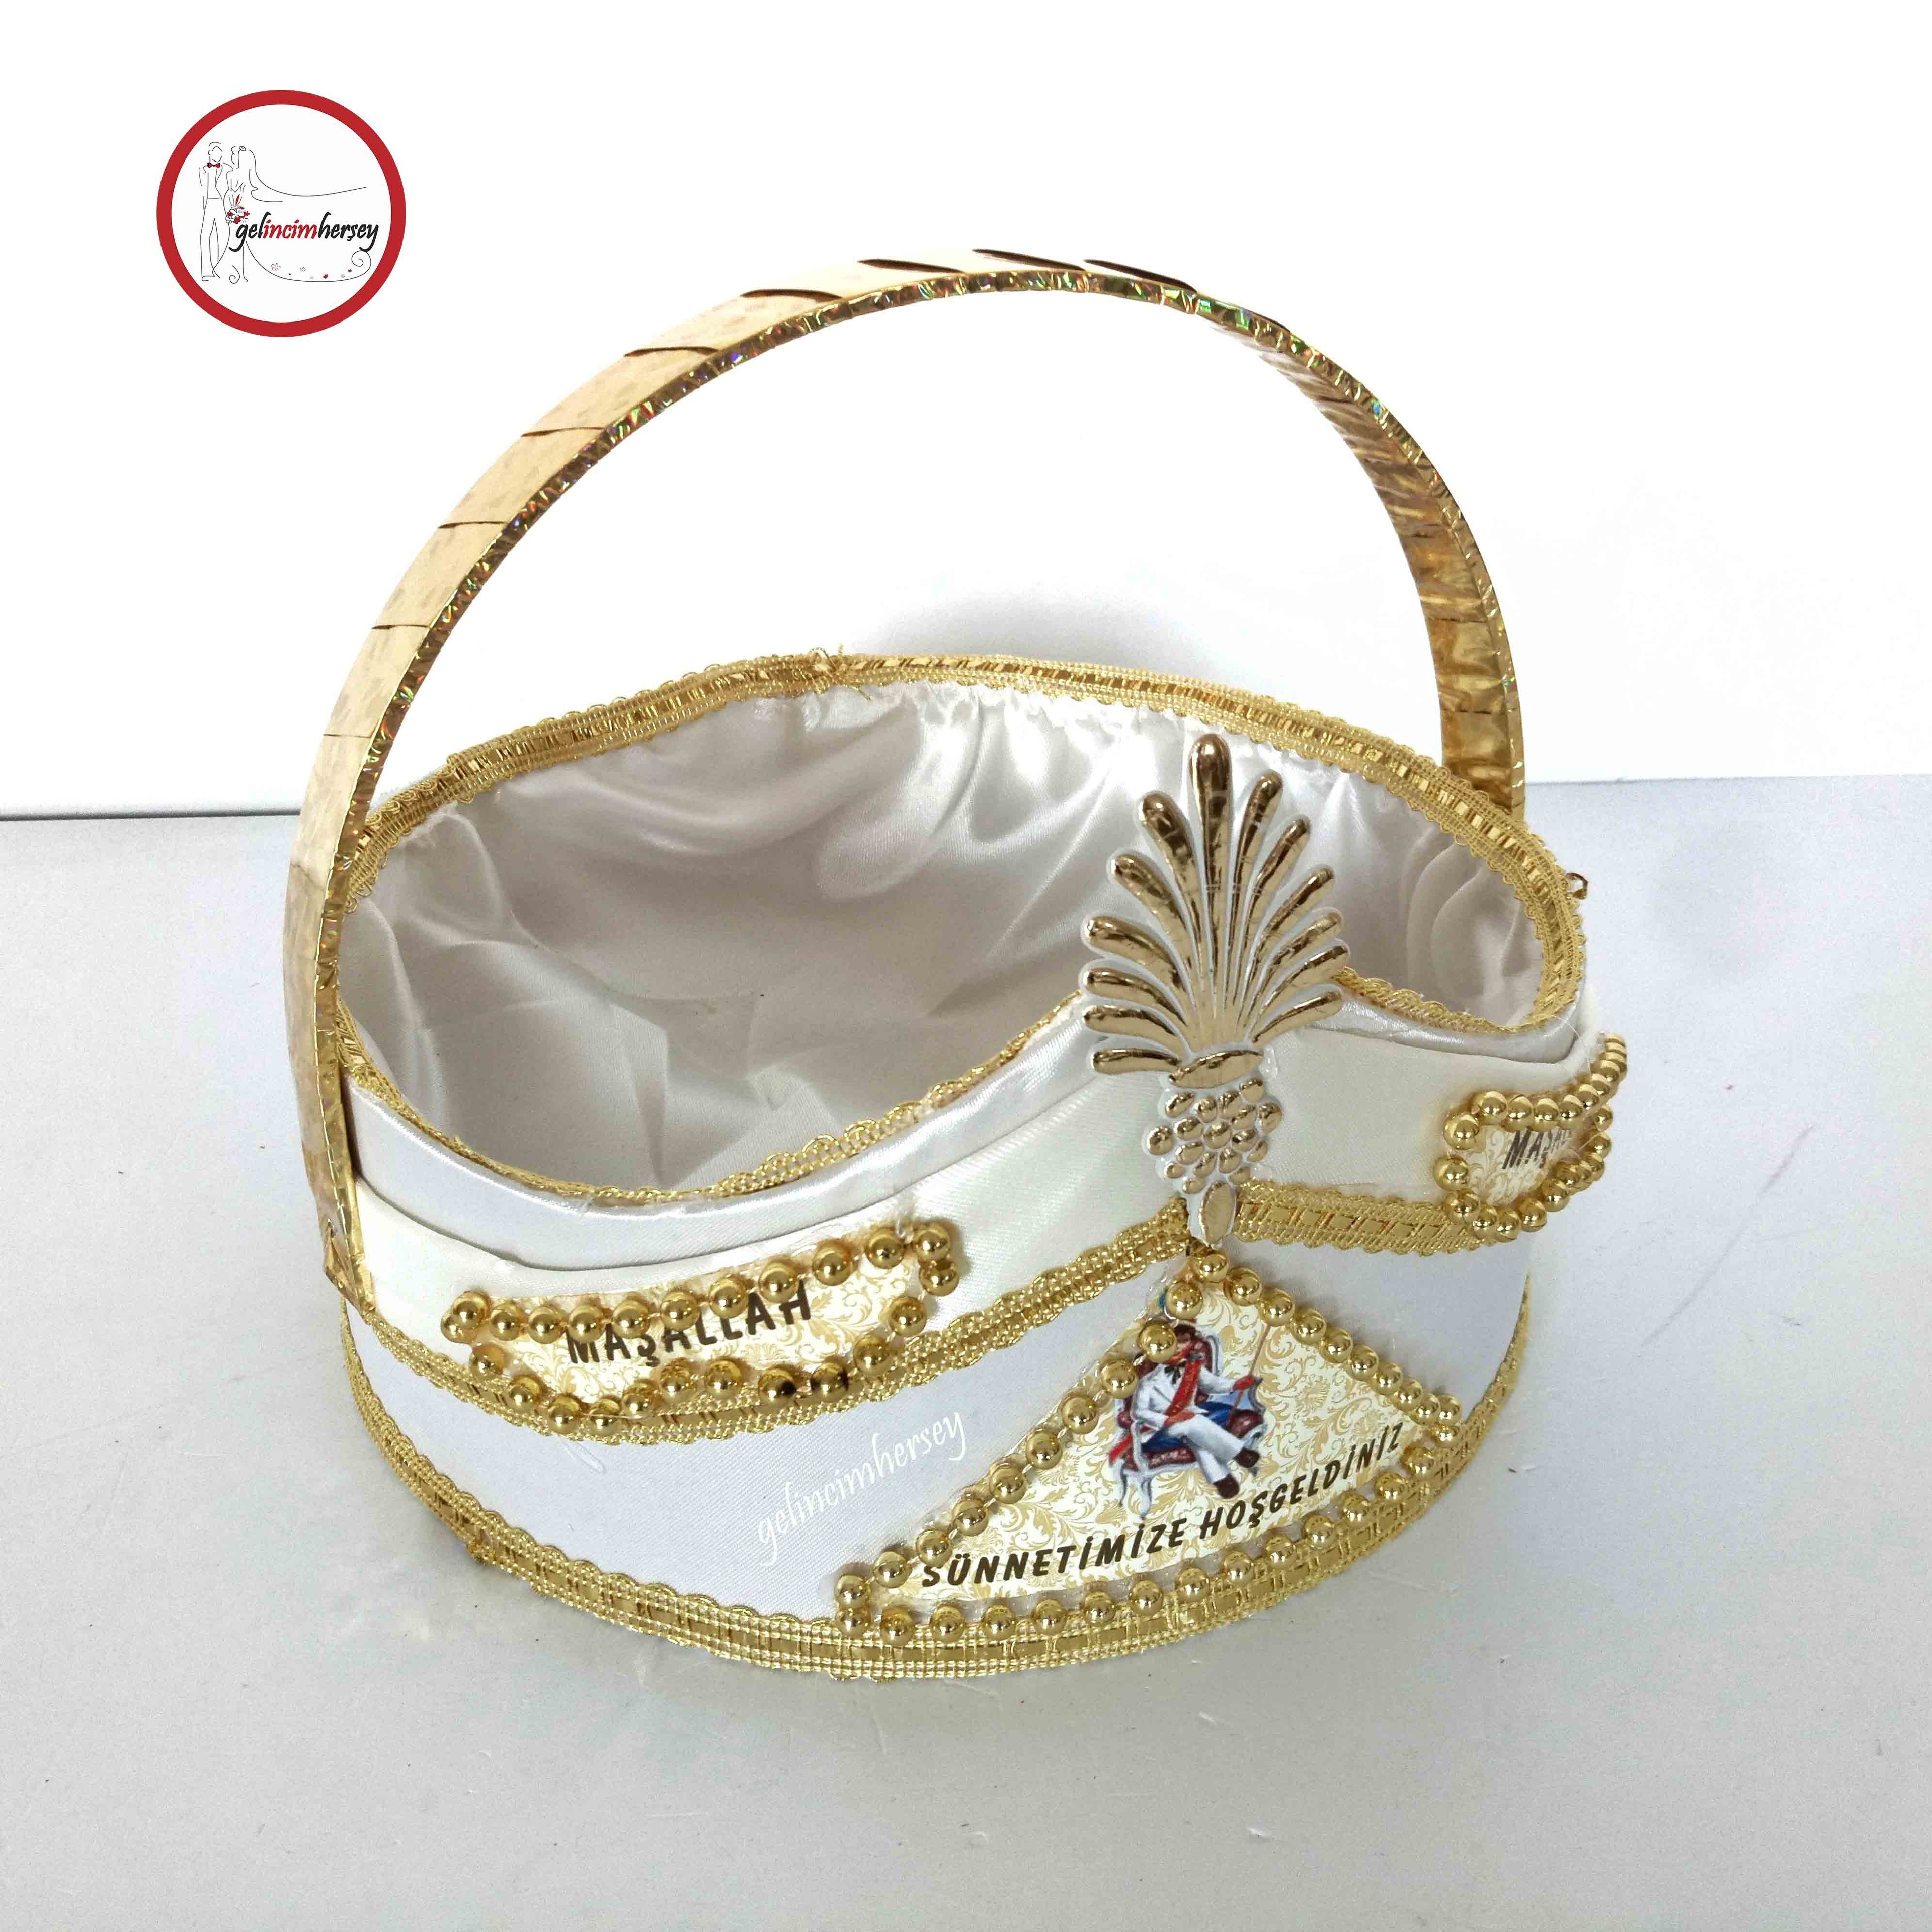 Gelincimherşey Beyaz Hediyelik Sünnet Şapka Şeklinde Süslemeli Sepet - Gold